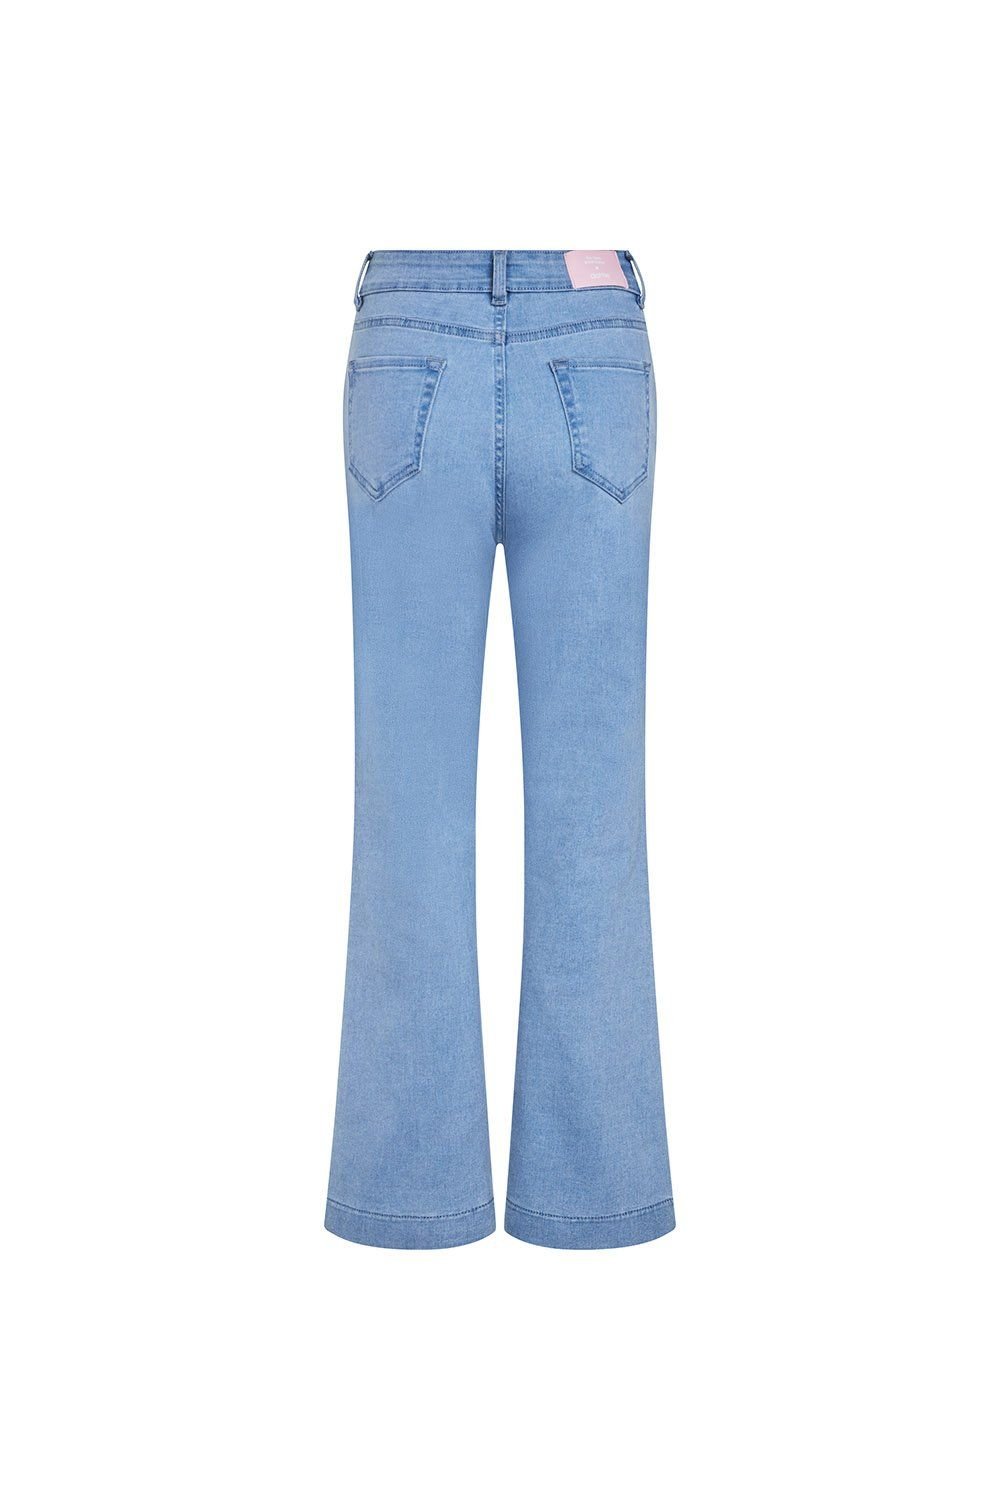  Quần jeans dài ống loe - Q0312 